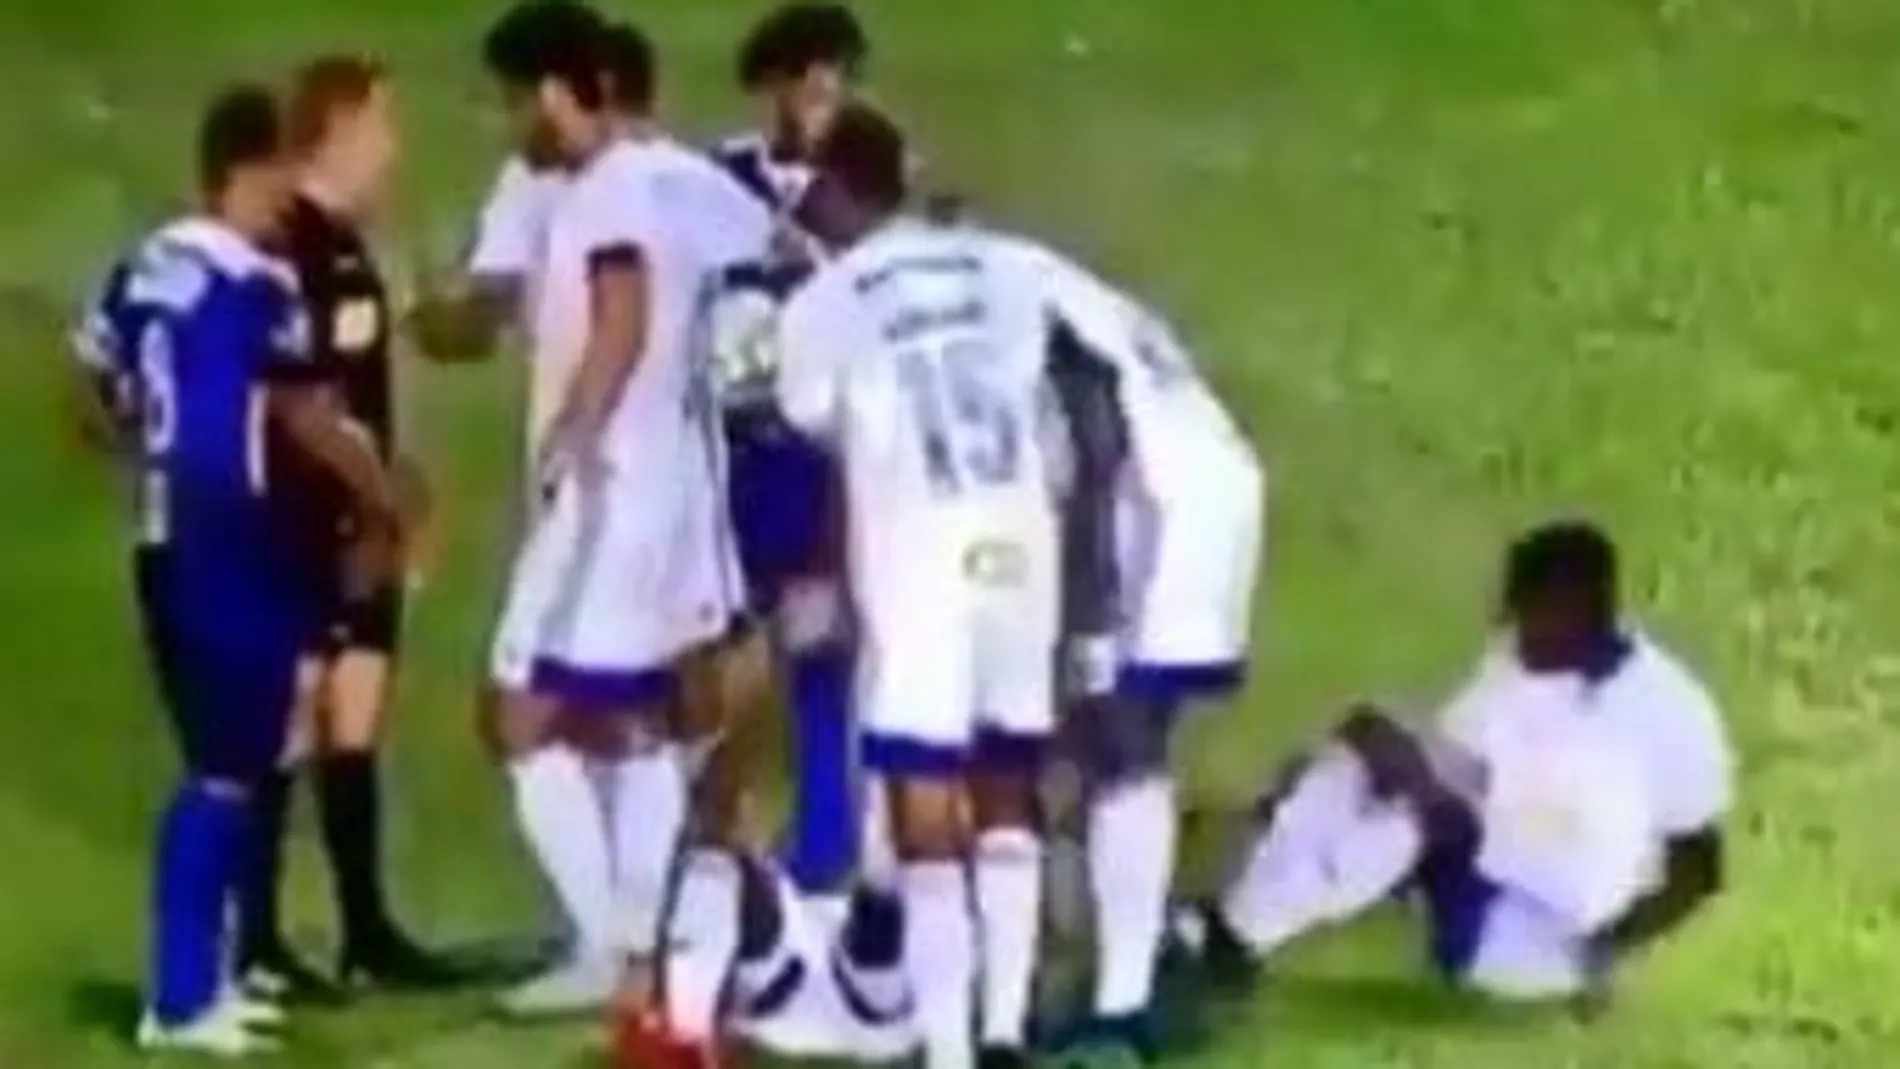 Los jugadores del Cruzeiro intentan engañar al árbitro